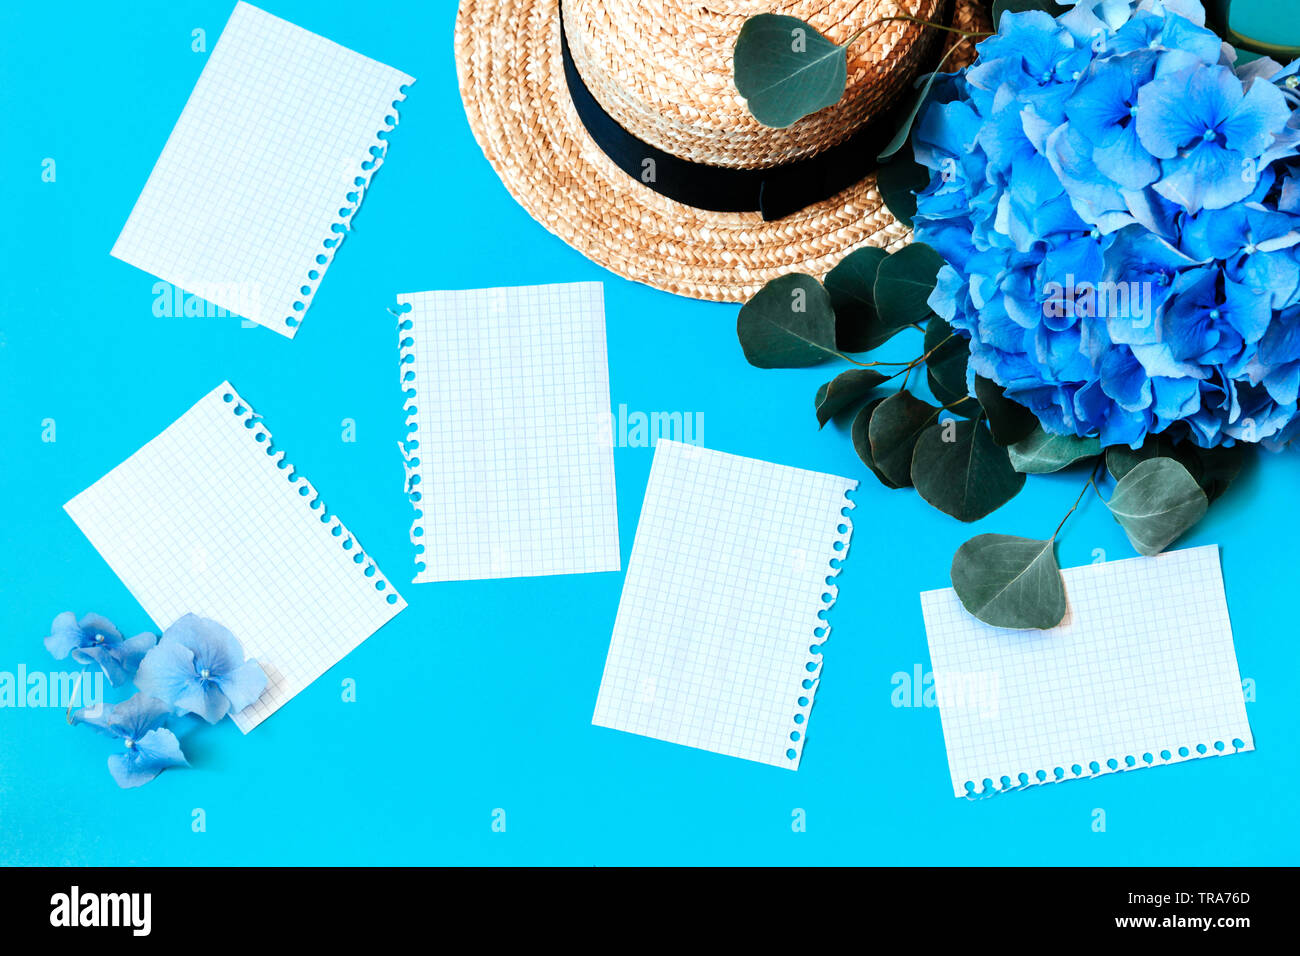 Blumenstrauß Blaue Hortensie auf einem blauen Hintergrund mit weißen getrennt Seiten und Stroh Sommer Hut. Platz kopieren Stockfoto